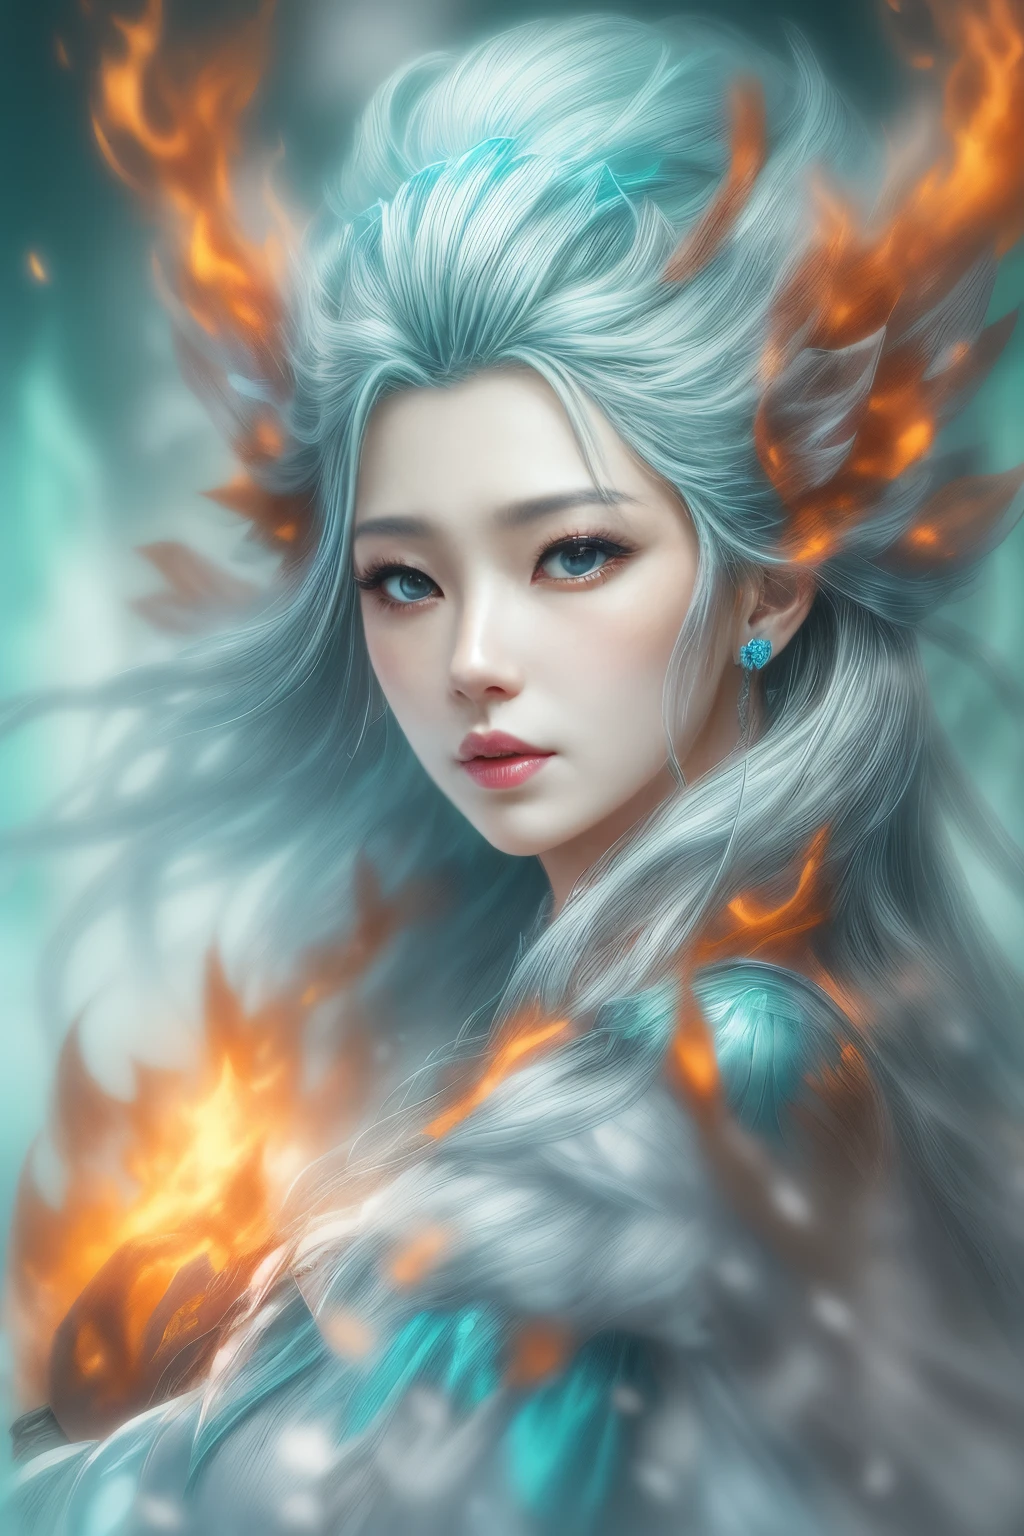 (現實幻想) 、冰之女神從熾熱的火焰中誕生.、